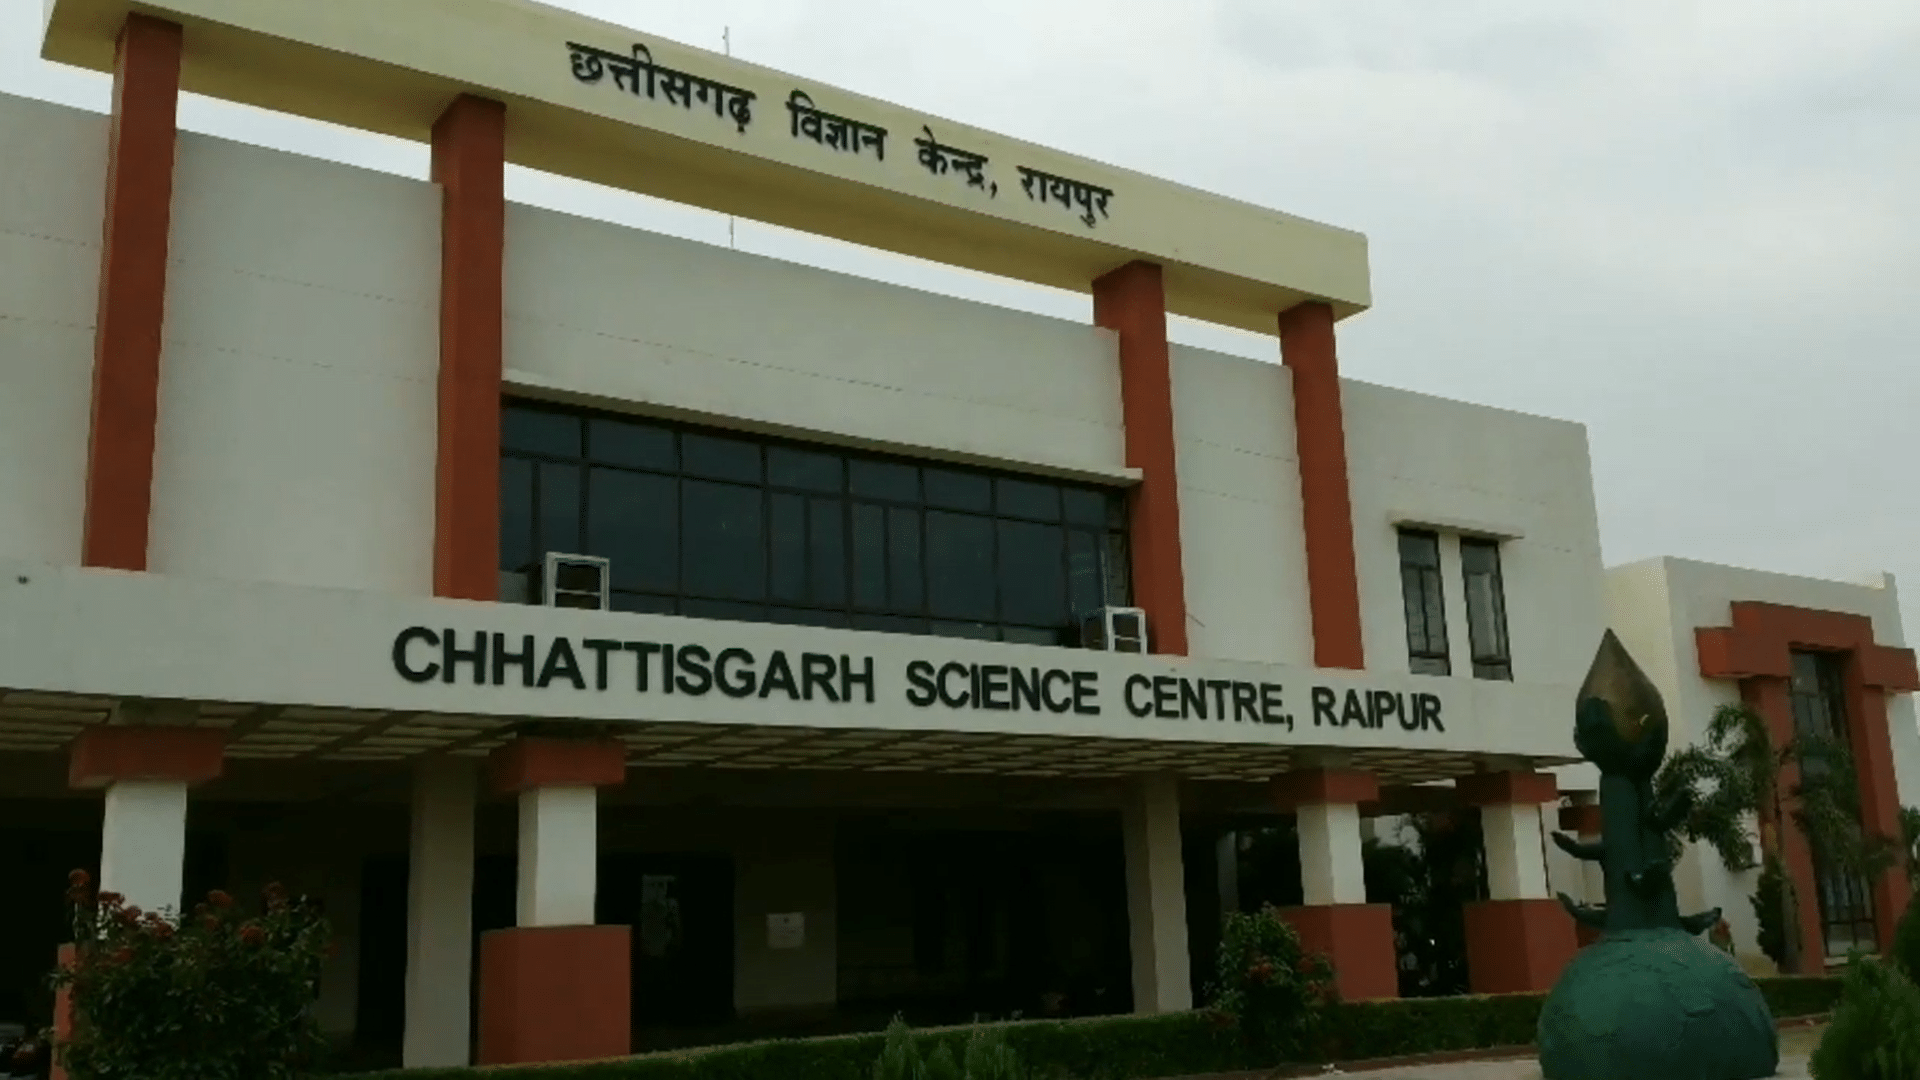 Chhattisgarh Science Centre Overview